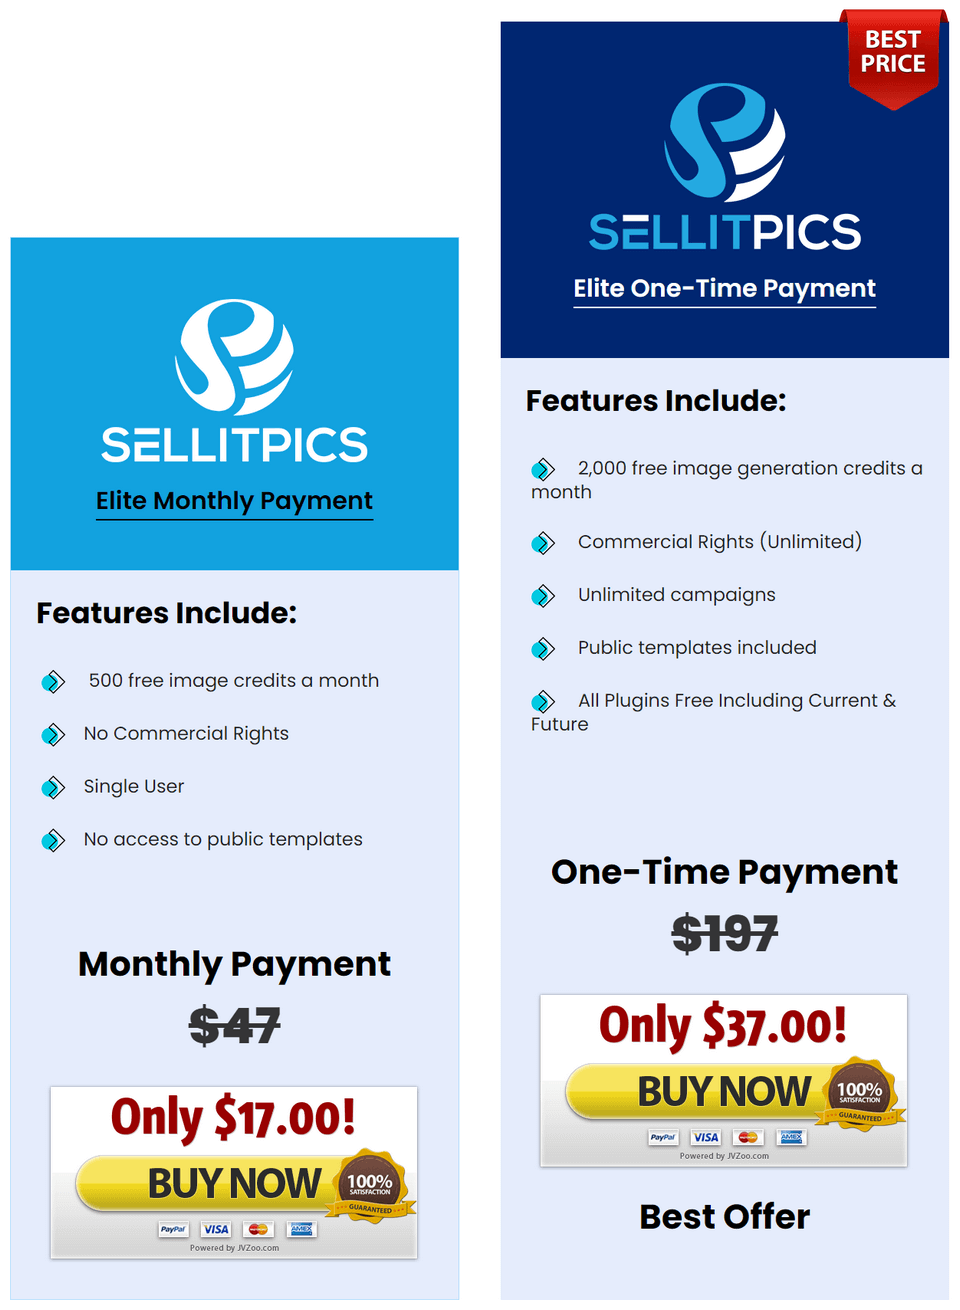 SellitPics-price